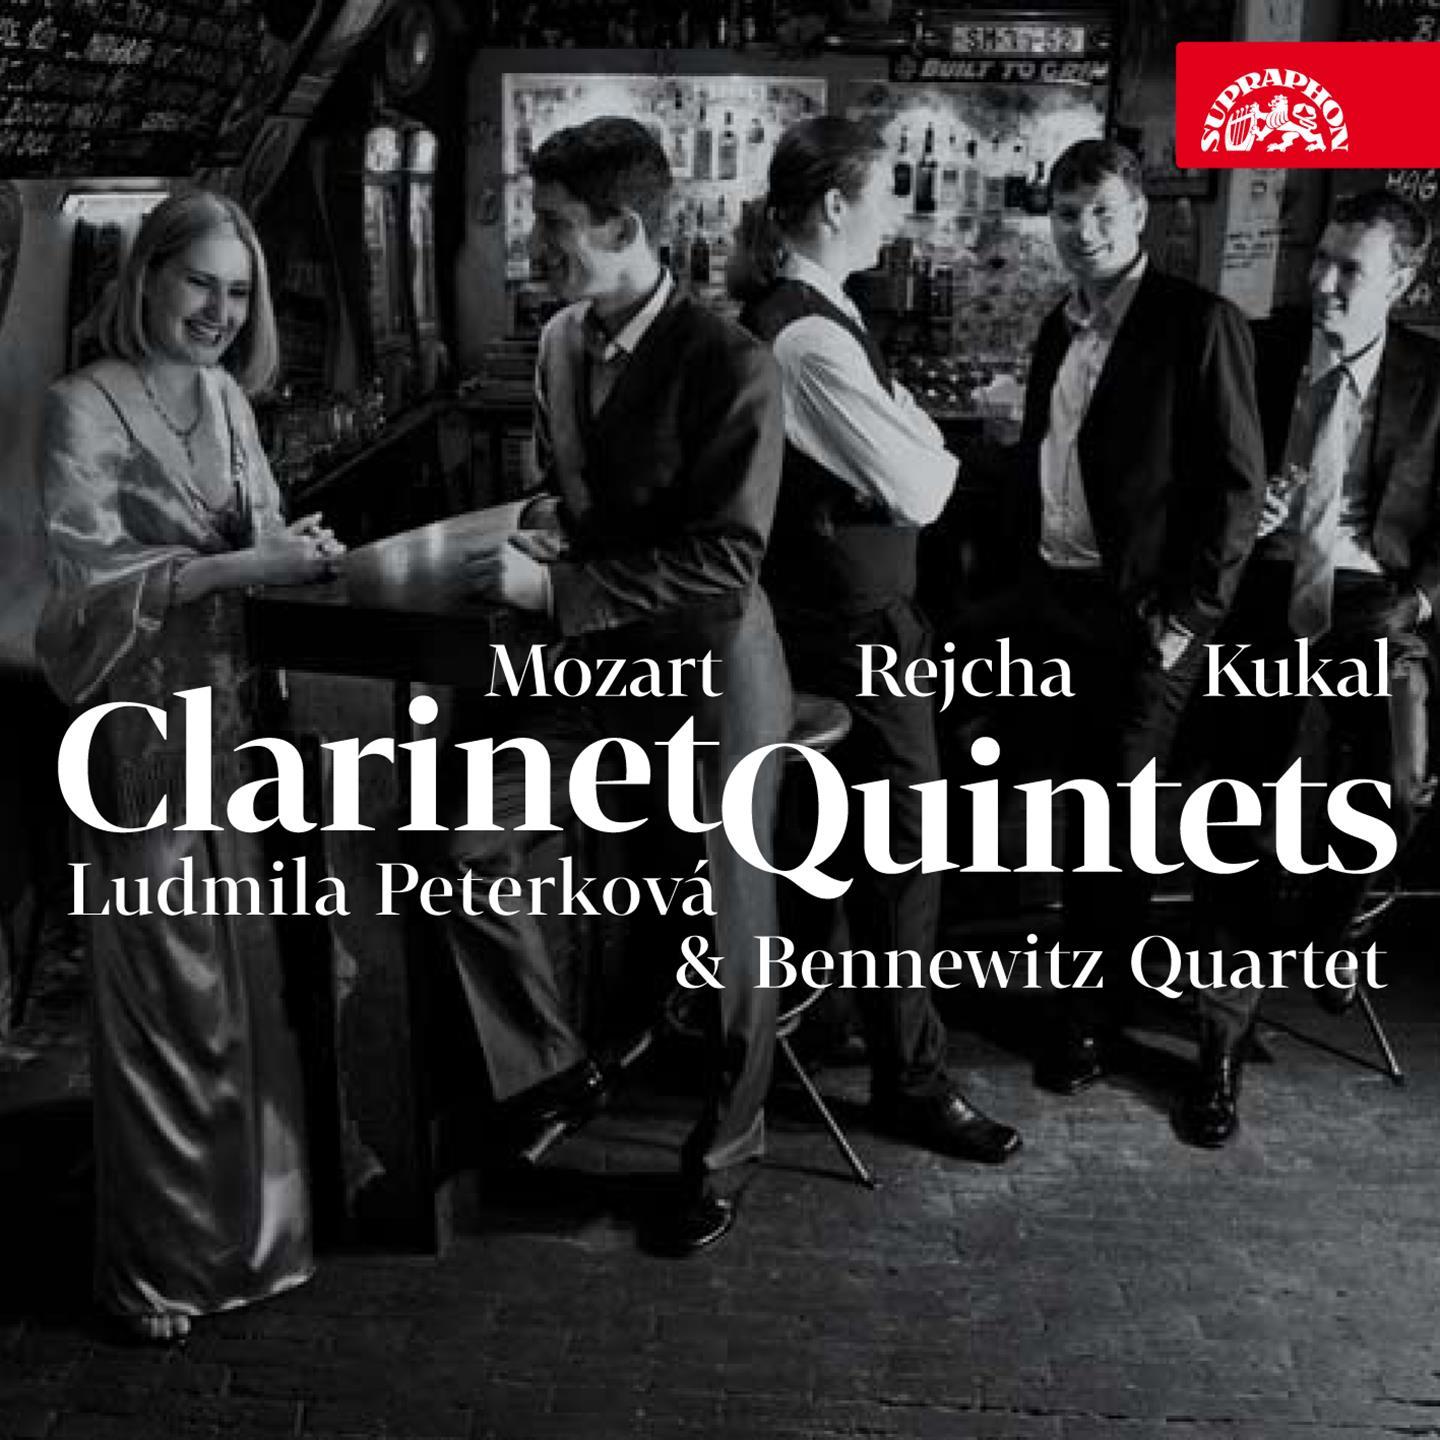 Clarinet Quintet in A Major, Op. 108, K. 581: IV. Allegretto con variazioni - Adagio